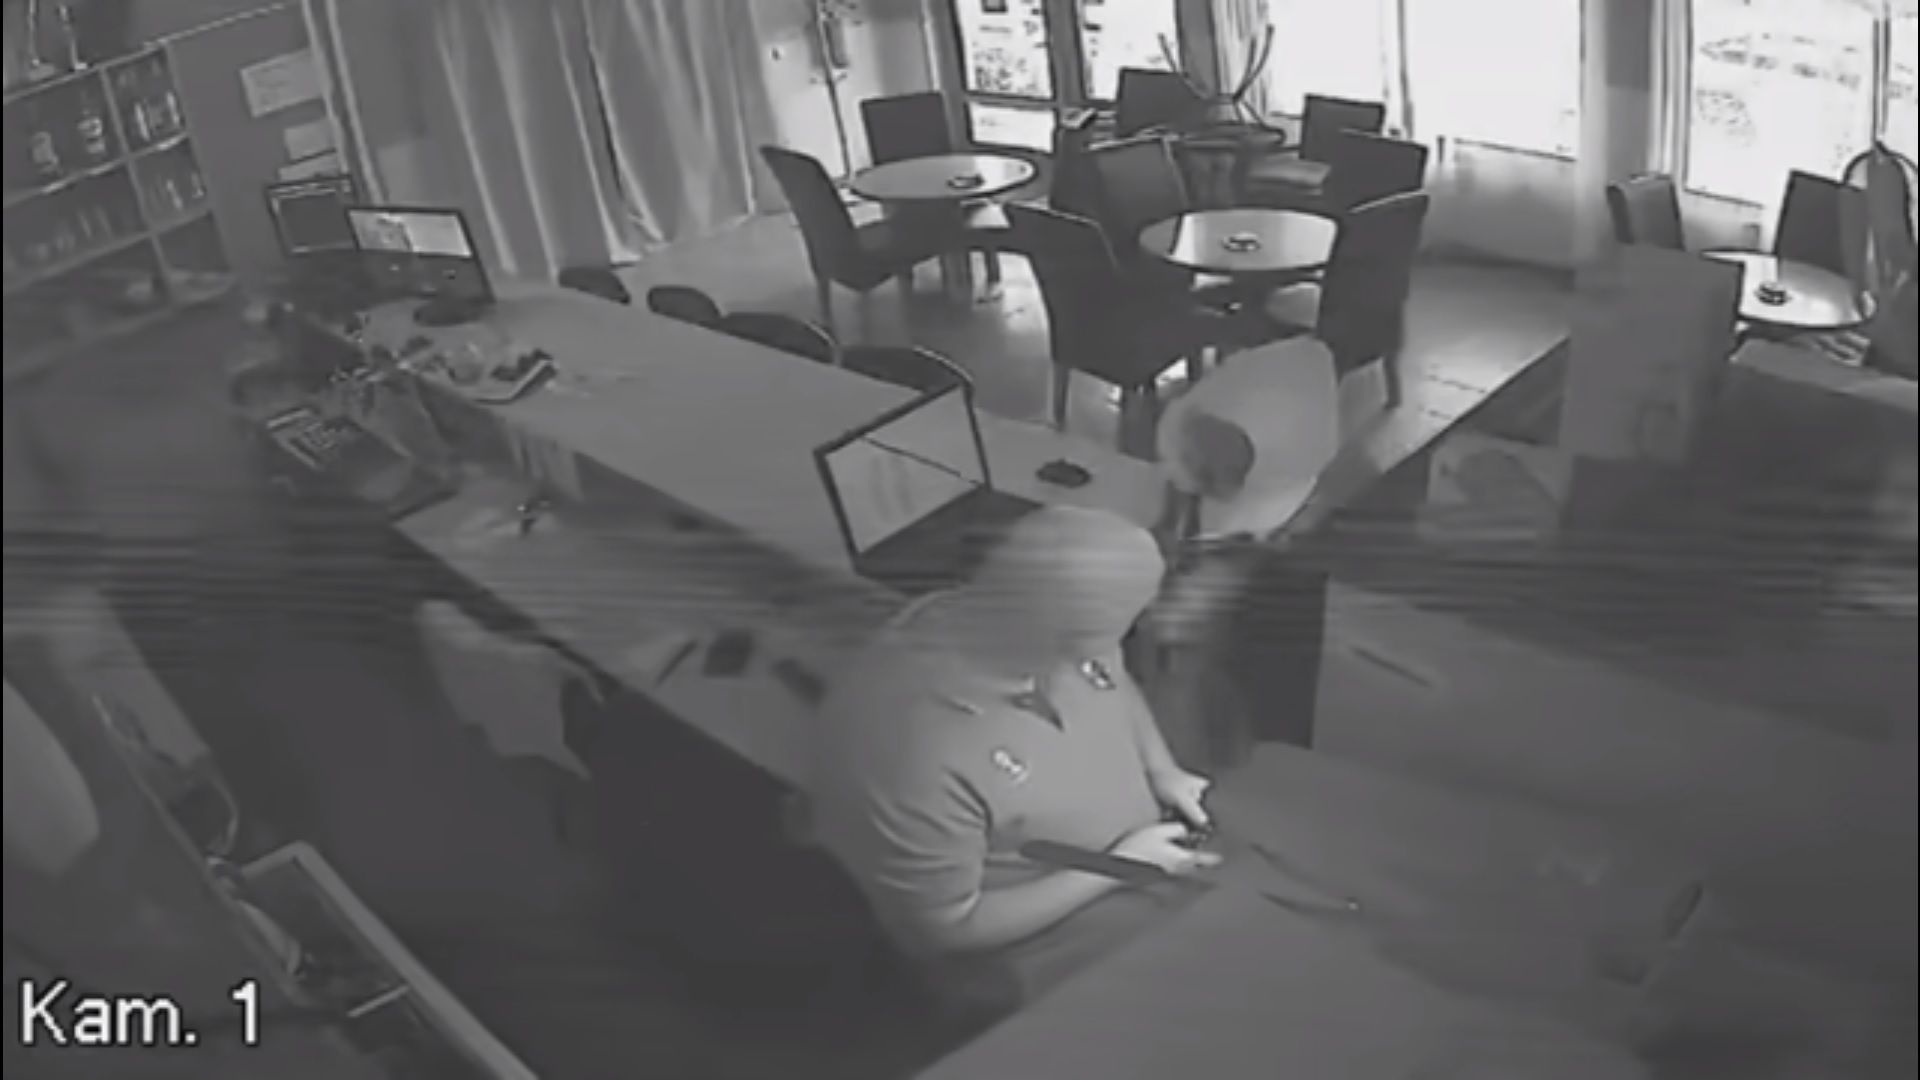 Egy maszkos férfi megpróbált kirabolni egy felvidéki kávézót, másodperceken belül menekülnie kellett